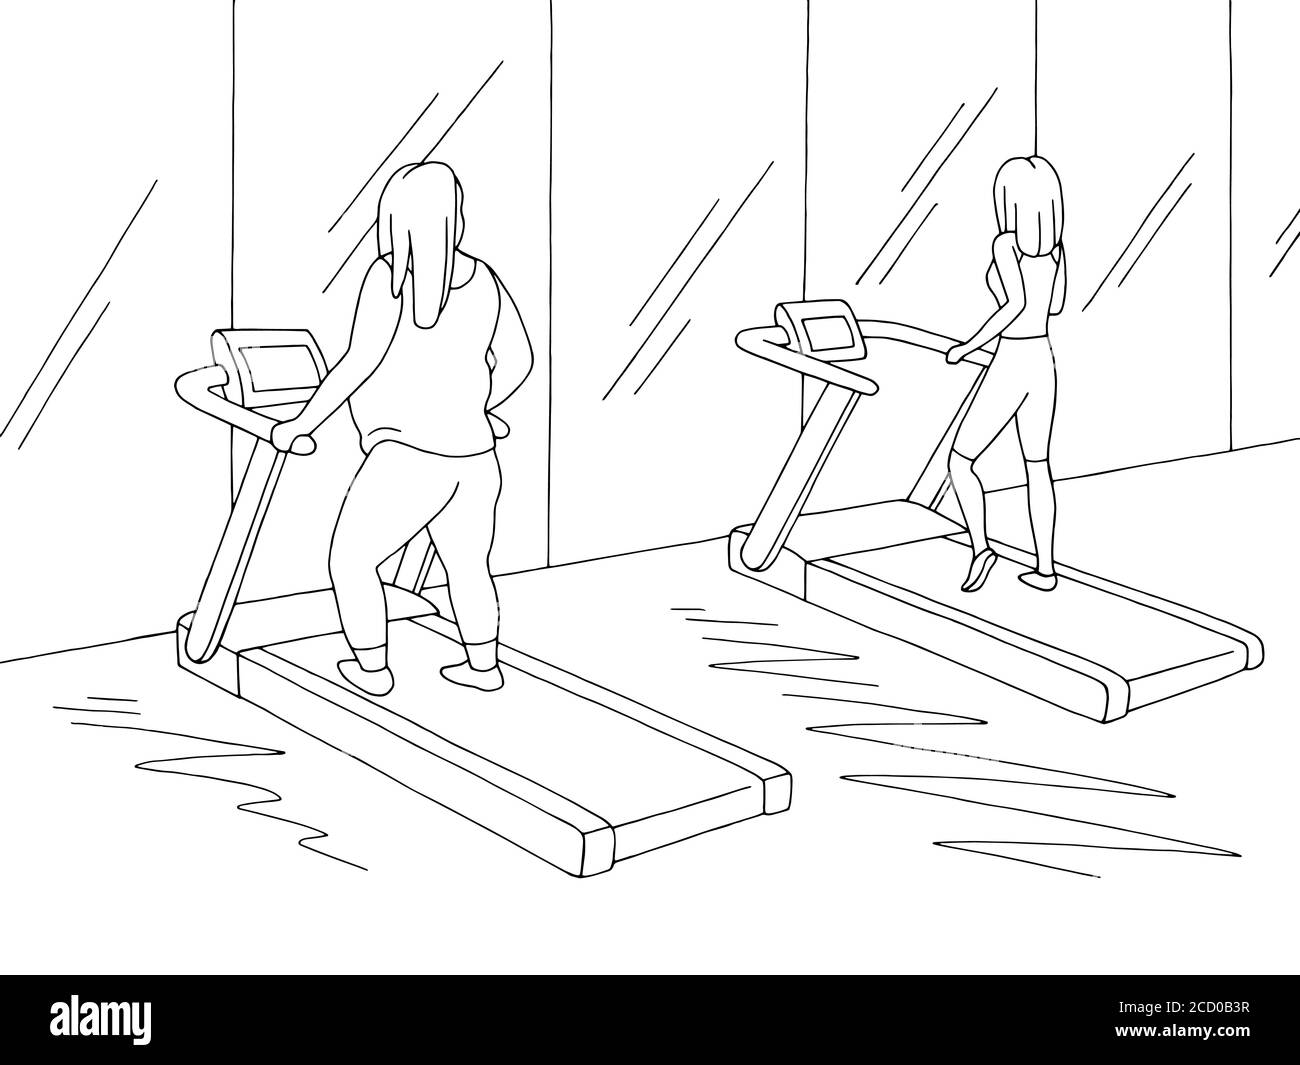 Gym Innengrafik schwarz weiß Skizze Illustration Vektor. Fett und dünne Frauen trainieren auf dem Laufband Stock Vektor